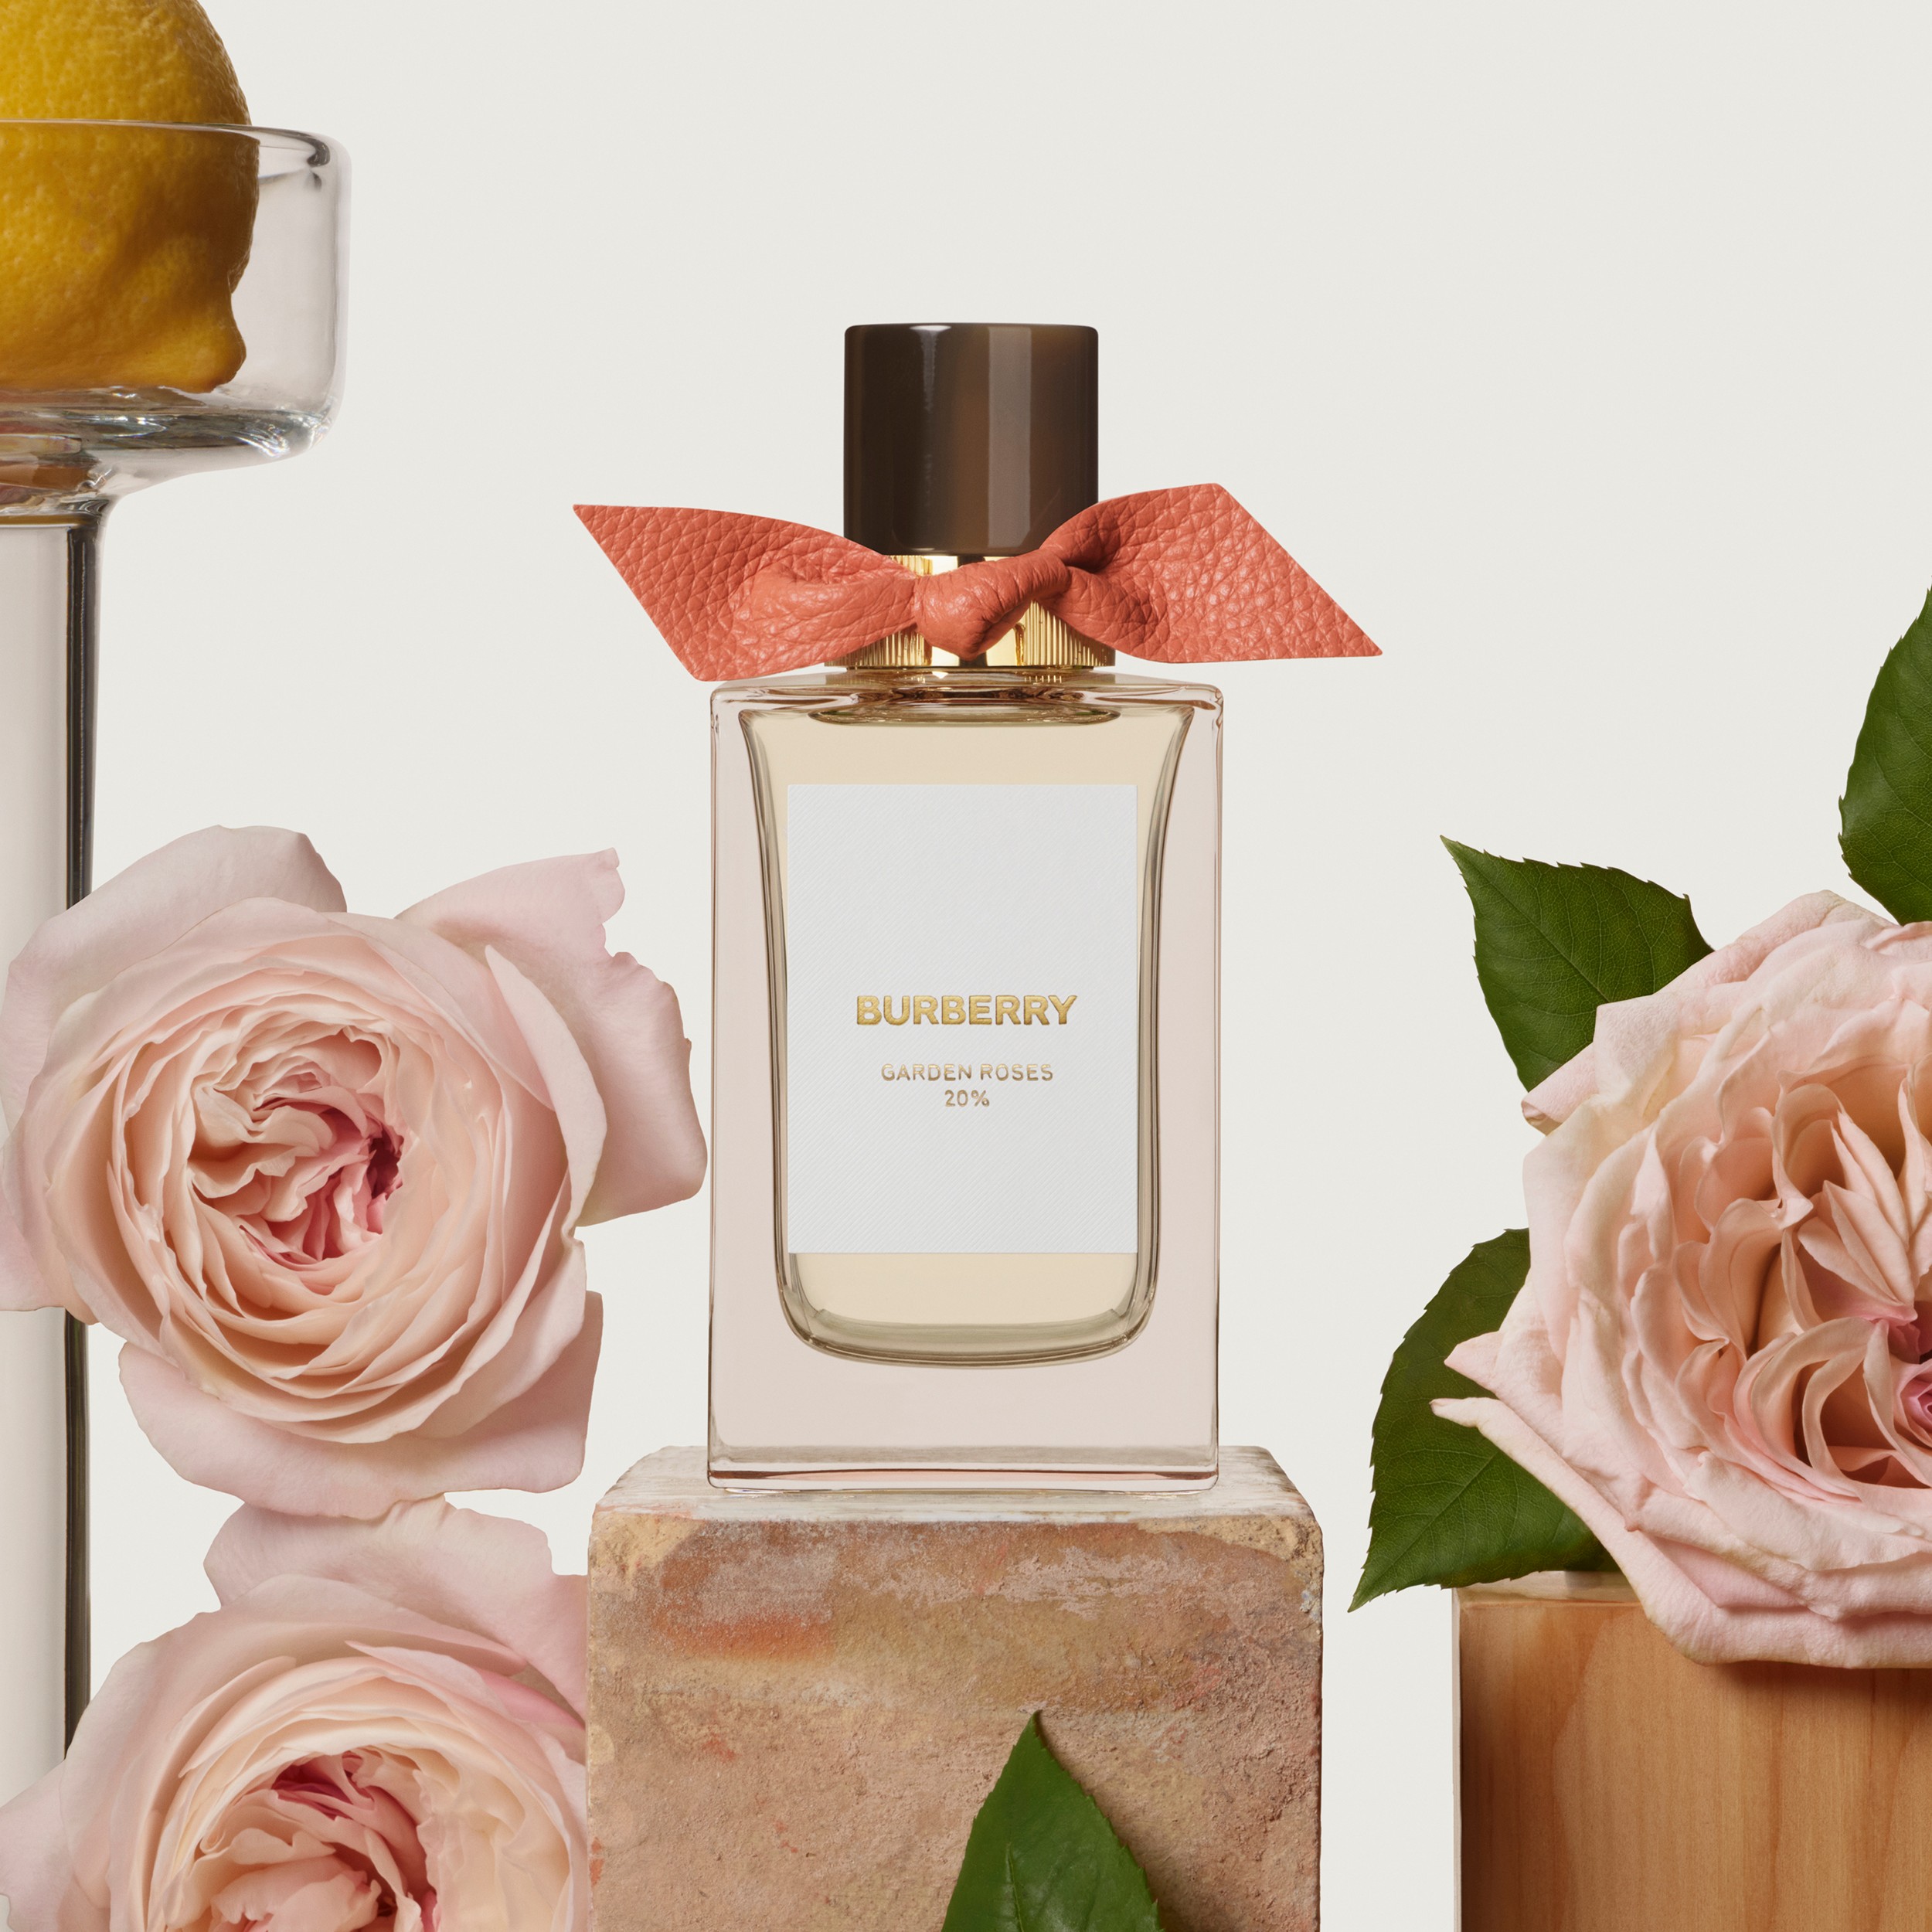 Burberry Signatures Eau de Parfum de 100 ml - Garden Roses | Burberry® oficial - 2